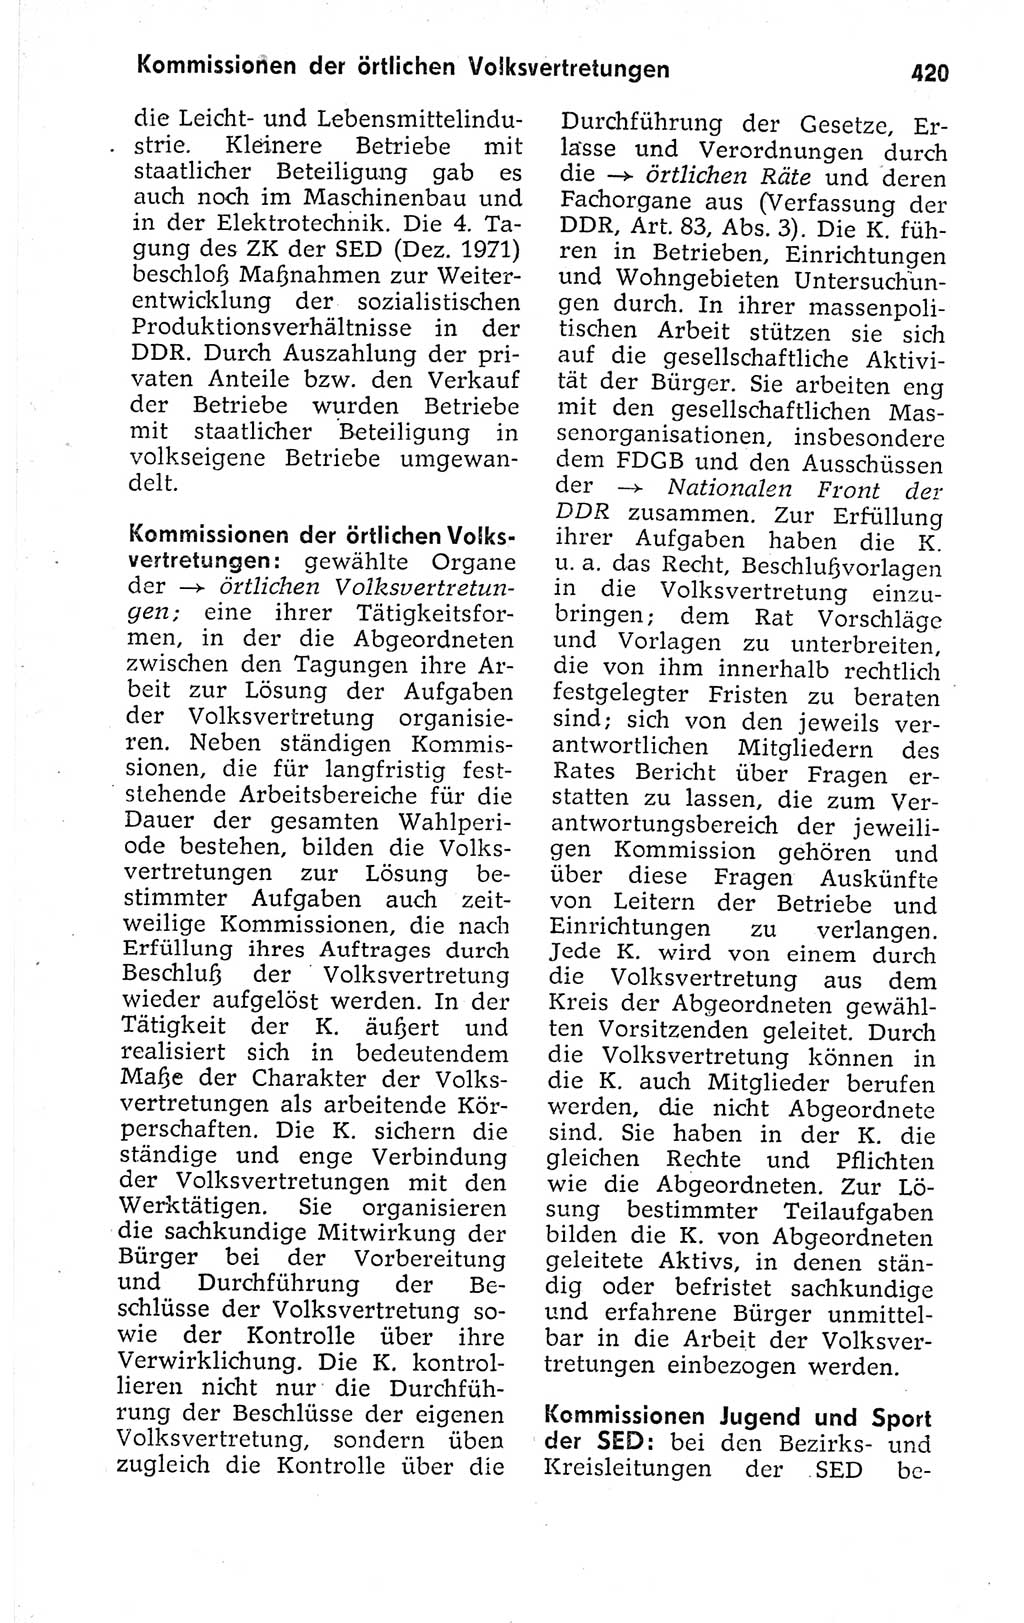 Kleines politisches Wörterbuch [Deutsche Demokratische Republik (DDR)] 1973, Seite 420 (Kl. pol. Wb. DDR 1973, S. 420)